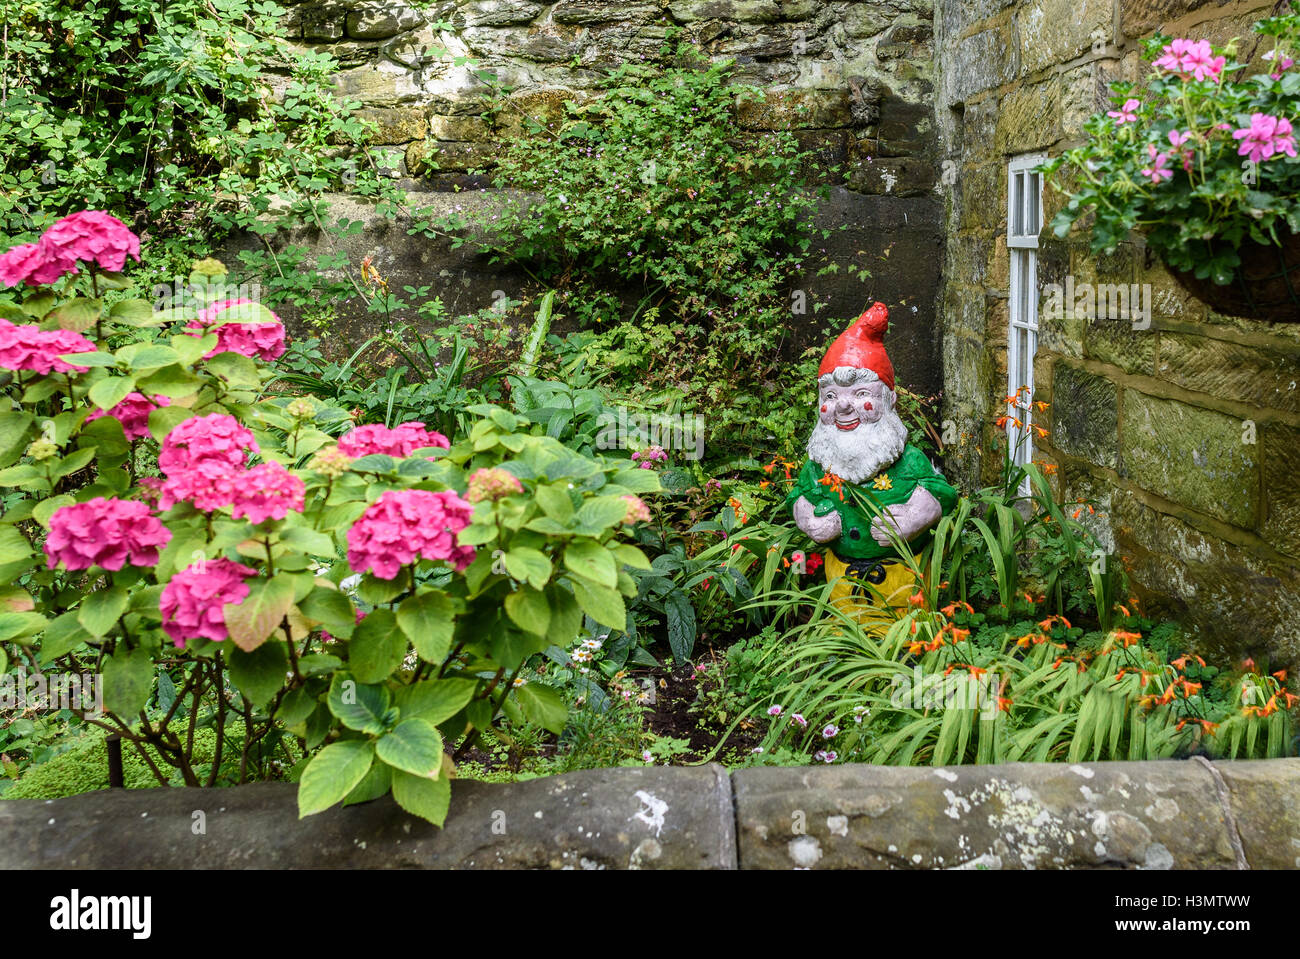 Garden Gnome in a cottage garden. Stock Photo